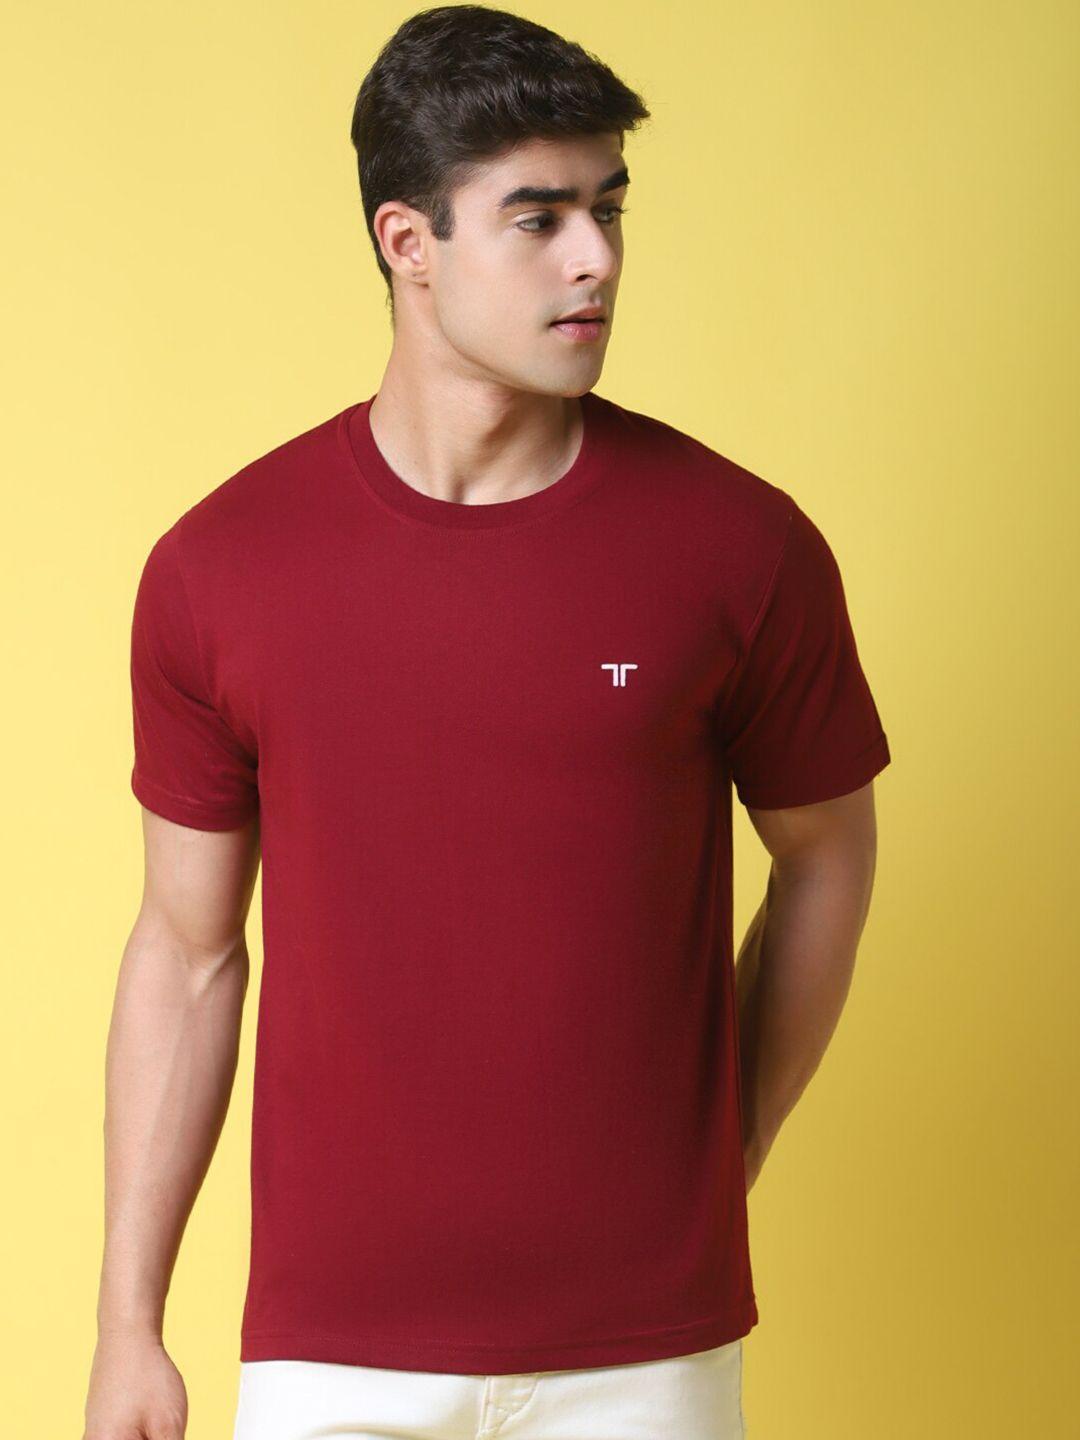 1 stop fashion men maroon applique t-shirt